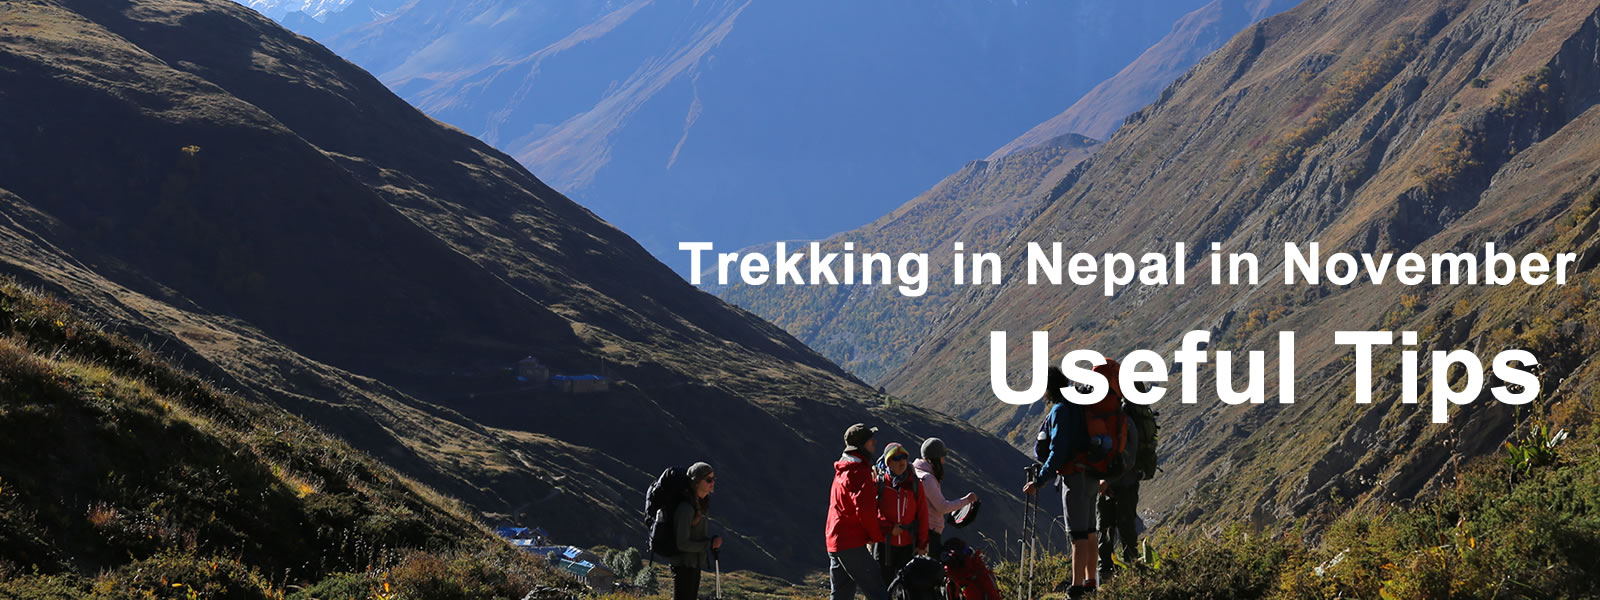 trekking-in-nepal-in-november-useful-tips